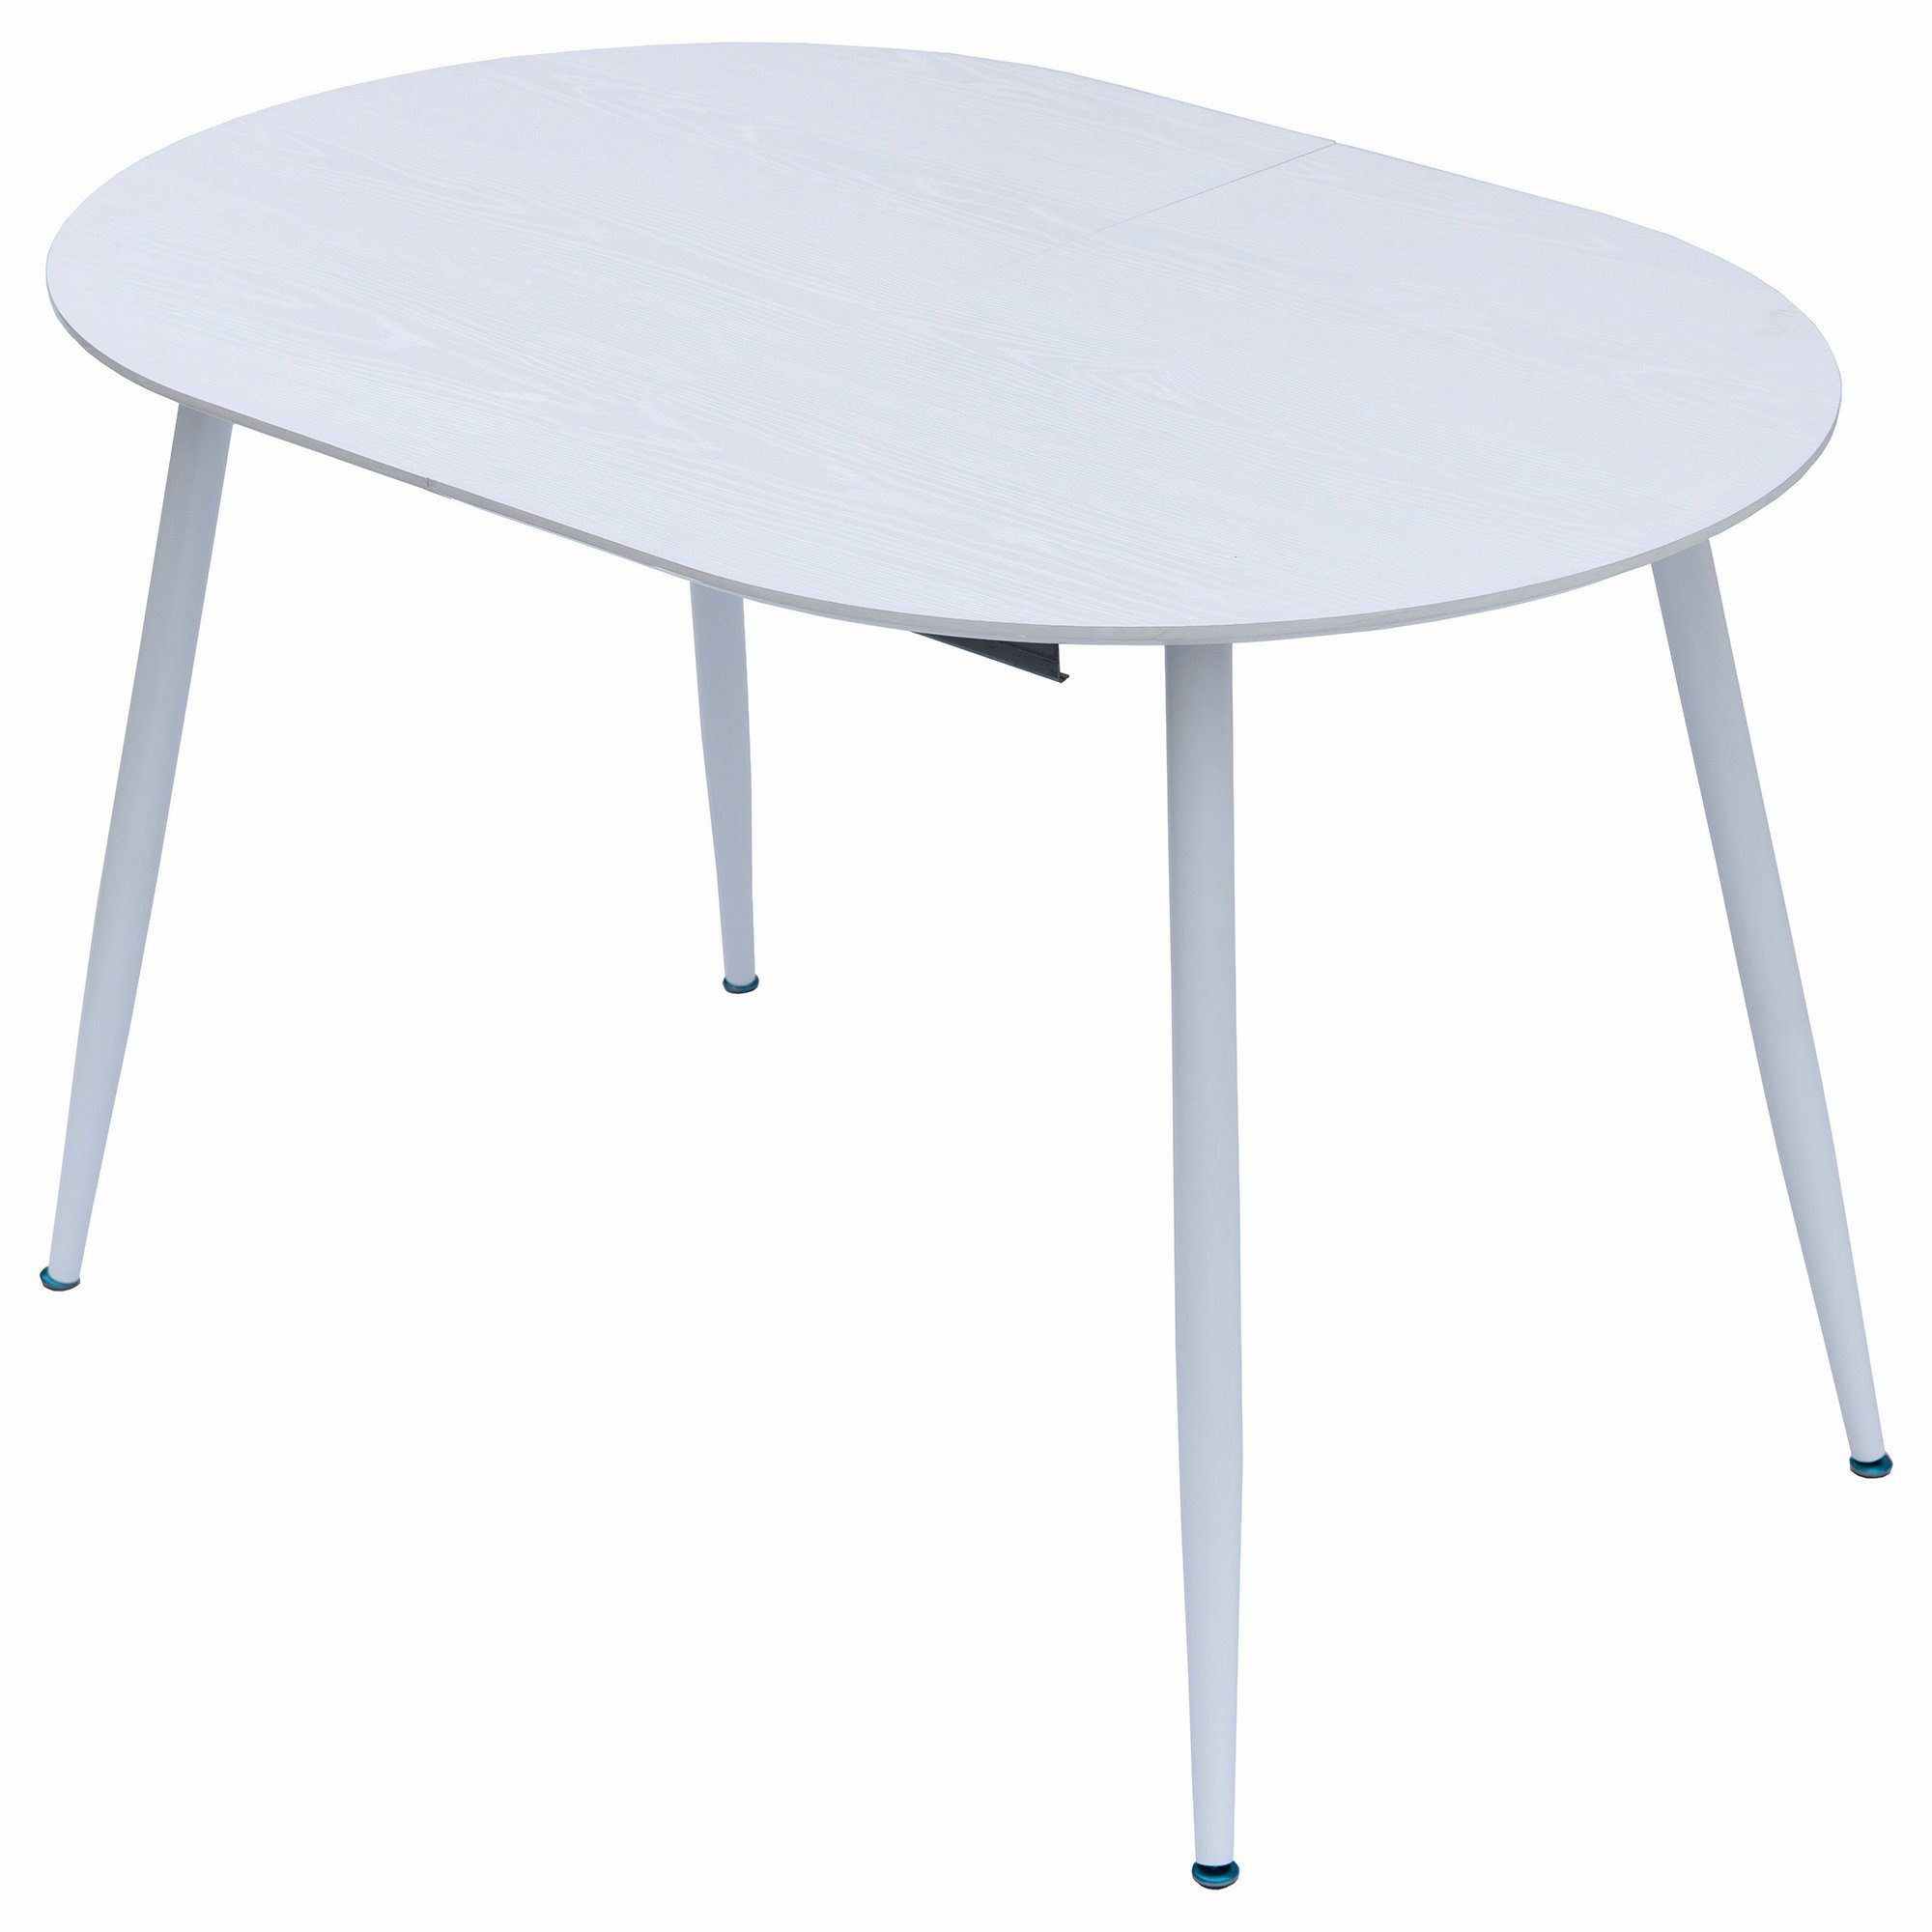 TRISENS Esstisch Weiß 120-150-180x80cm Tisch Ovaler Esstisch Rodrigo, ausziehbar Holz 4-10Pers. Optik